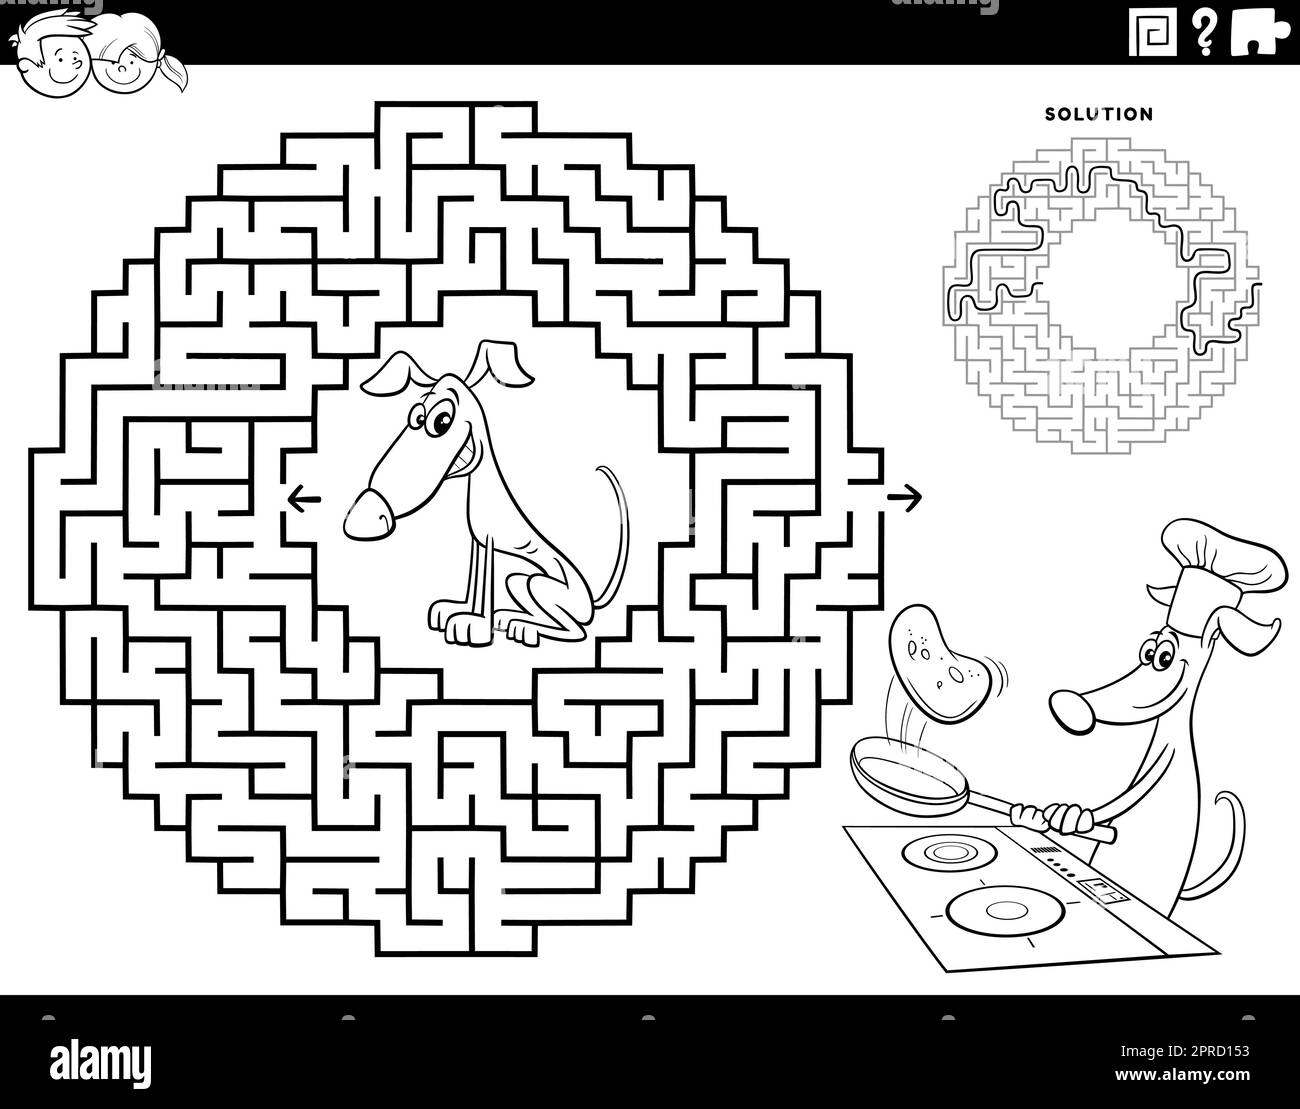 Ein Labyrinth-Spiel mit Hund, der Pfannkuchen macht Stock Vektor